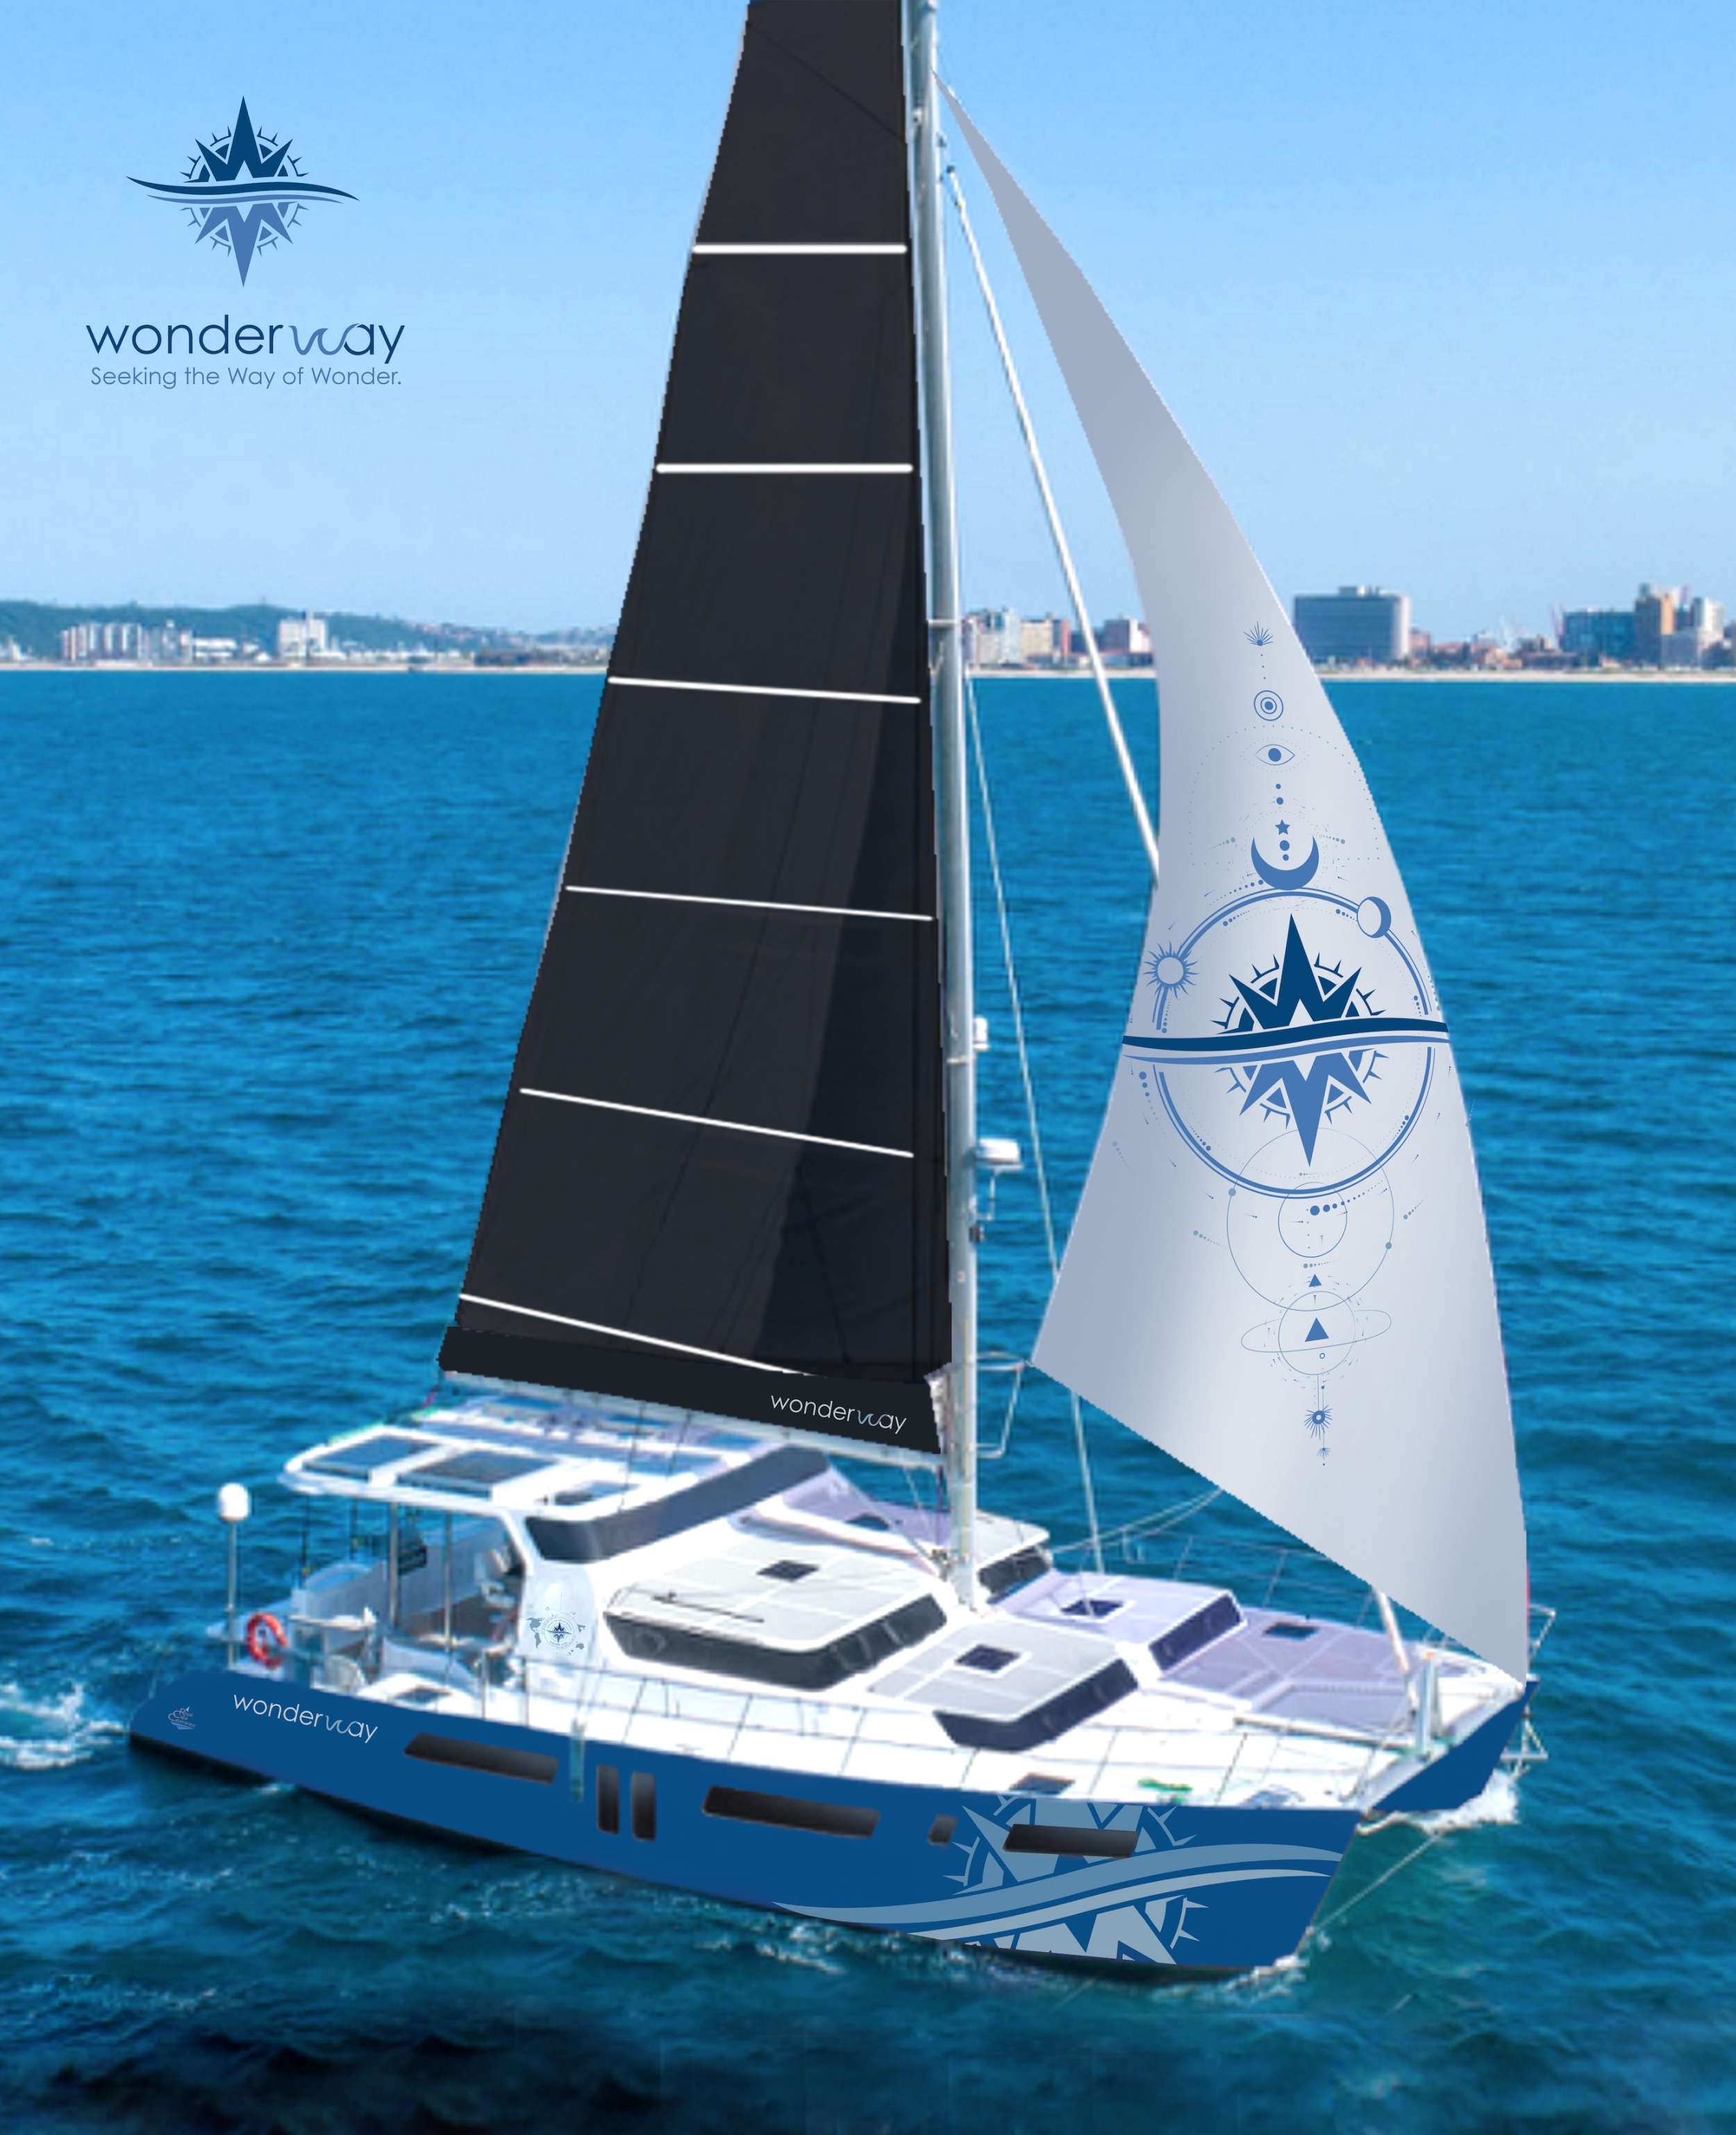 Wonderway Superyacht Charter